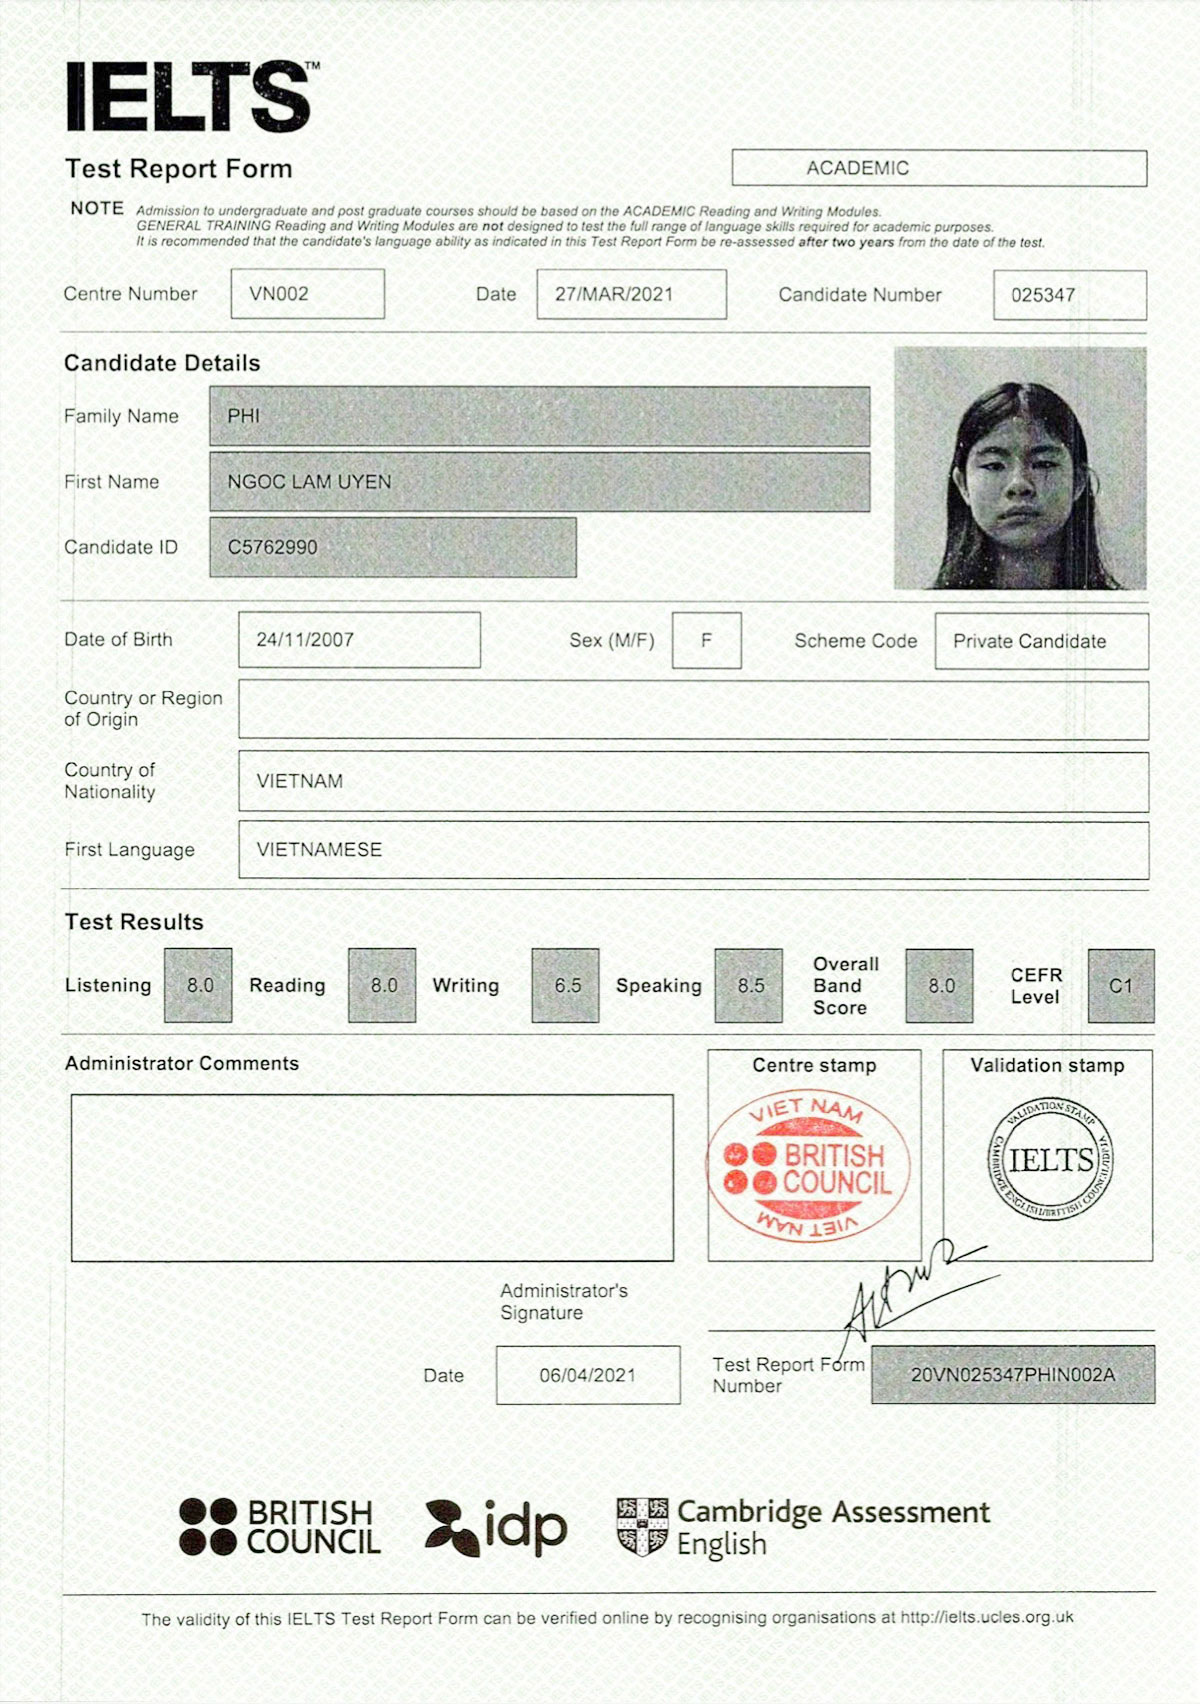 Bảng thành tích đạt điểm IELTS 8.0 của thí sinh Phí Ngọc Lâm Uyên